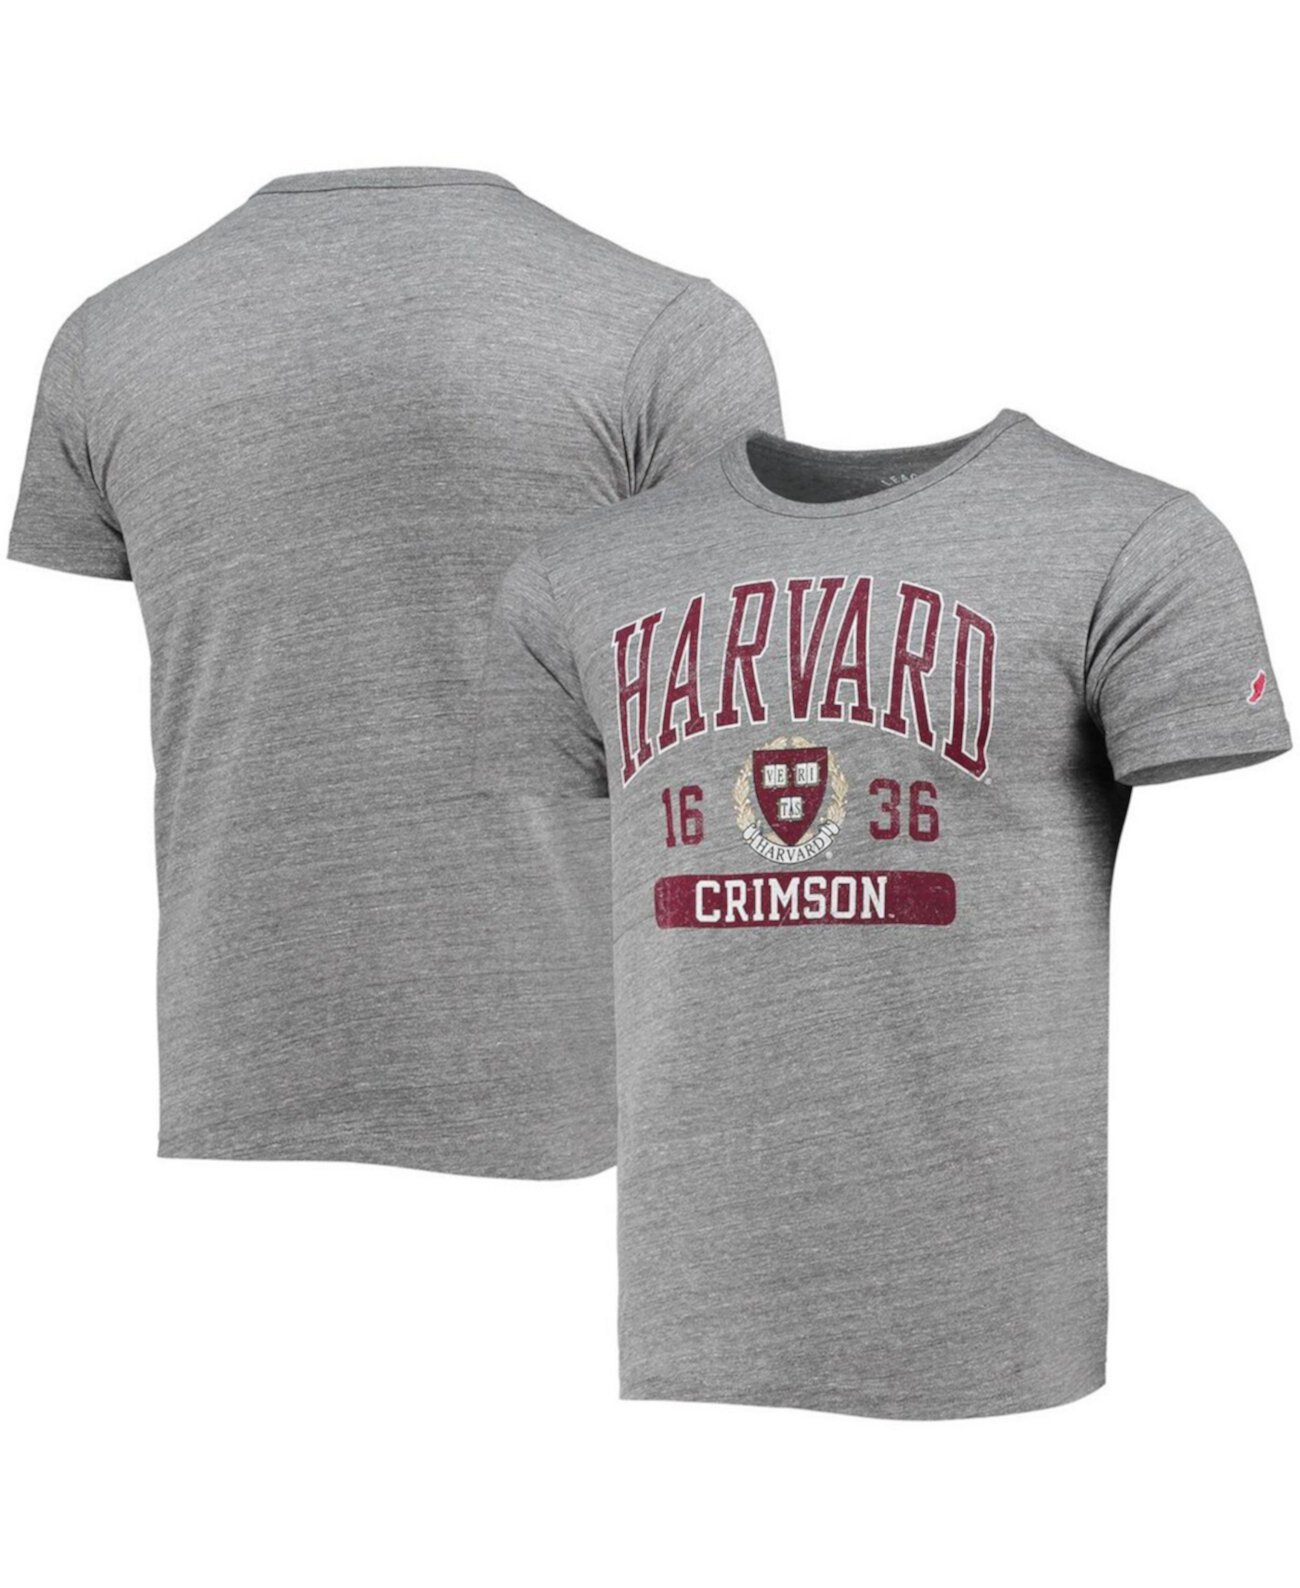 Мужская серая футболка с эффектом потертости Harvard Crimson Volume Up Tri-Blend Victory Falls League Collegiate Wear